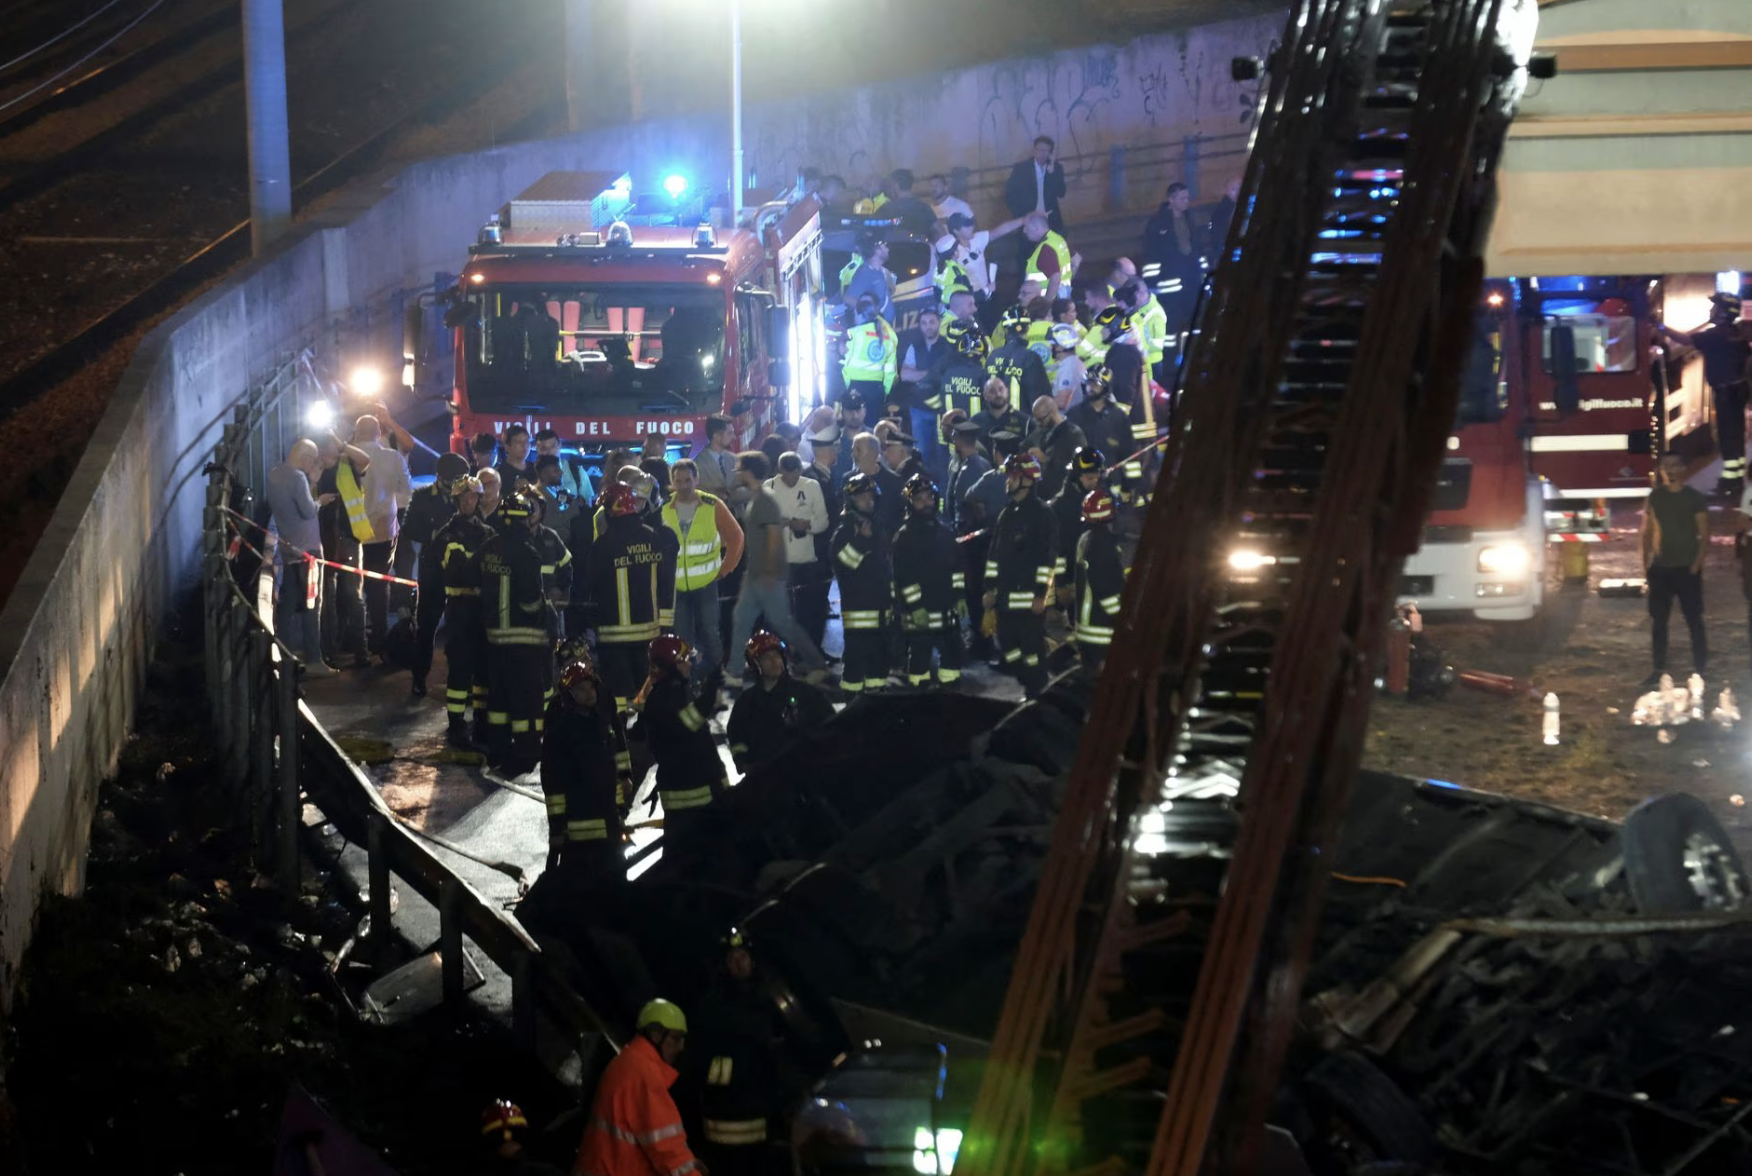 Video hiện trường vụ tai nạn xe buýt kinh hoàng tại Italy, gần 40 người thương vong  - Ảnh 1.